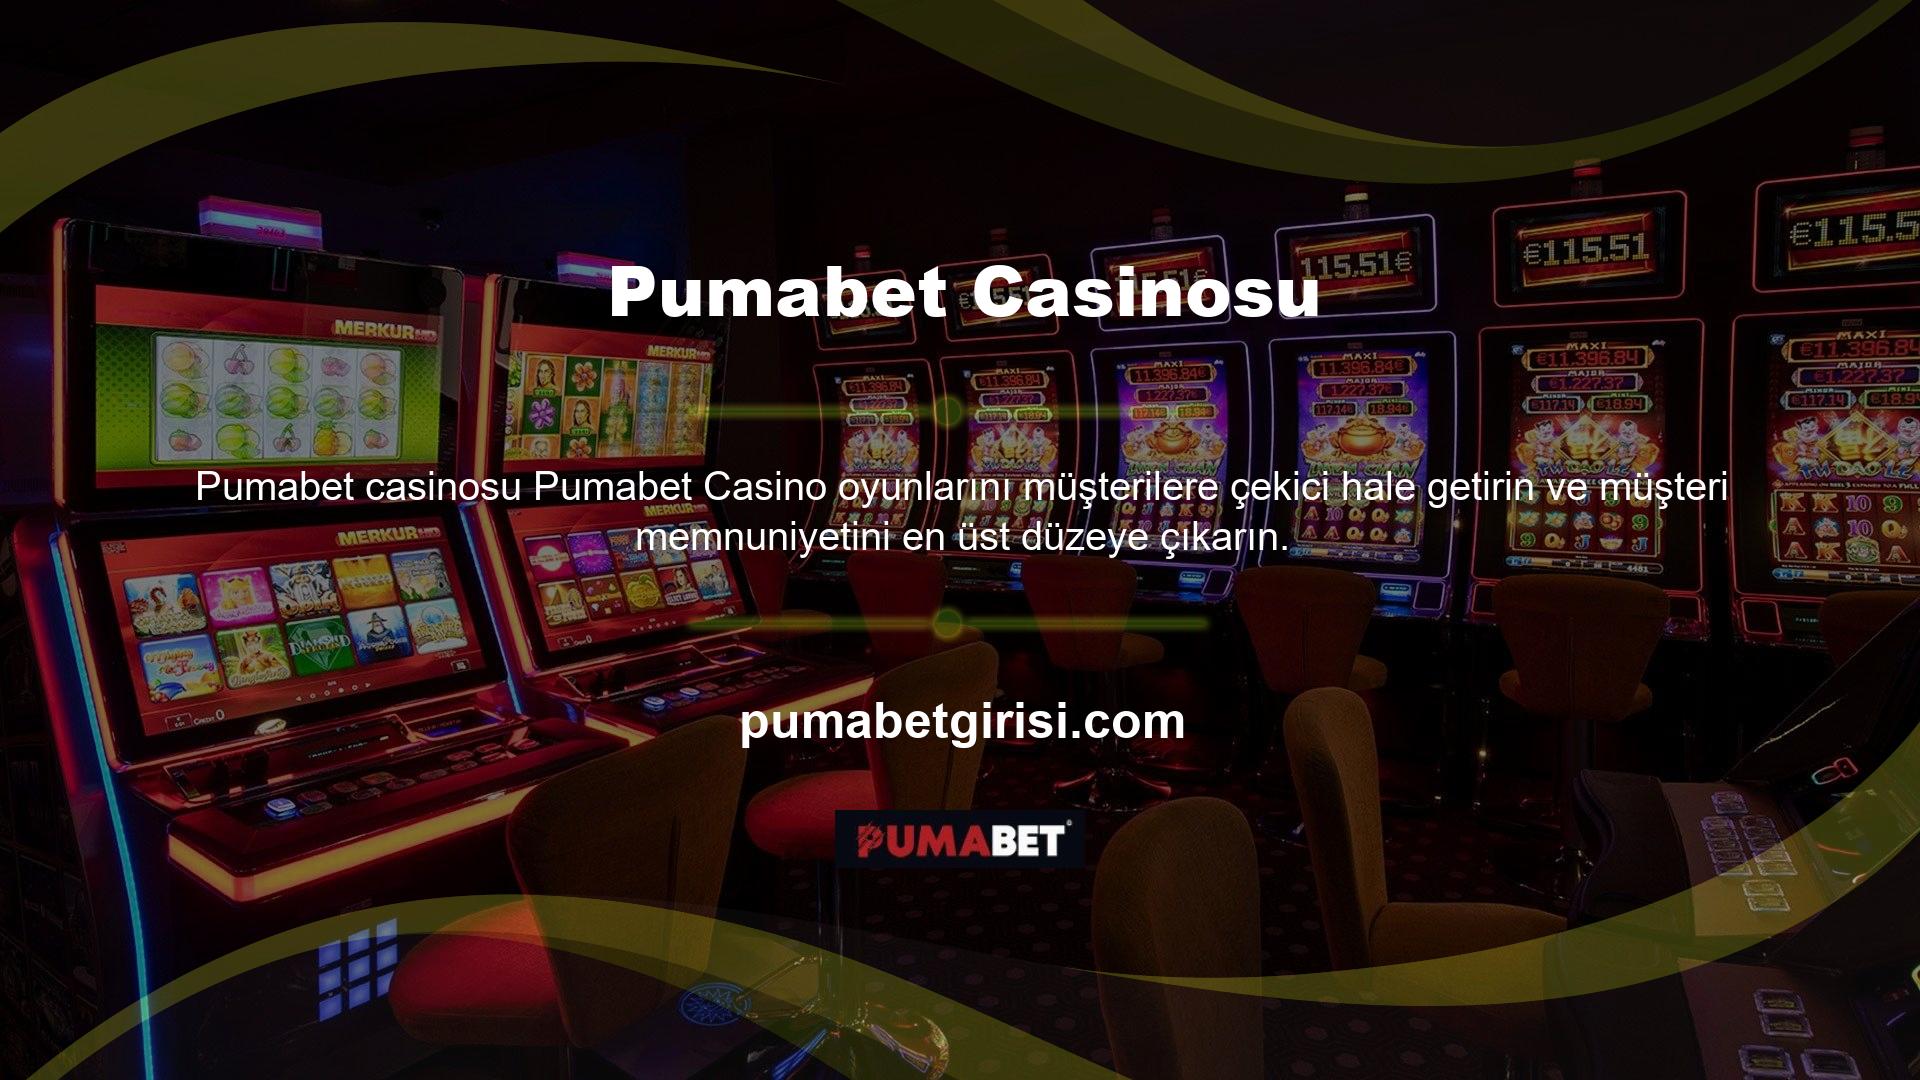 Pumabet Casino oyunları ile müşterilerine büyük bir eğlence sunulmaktadır